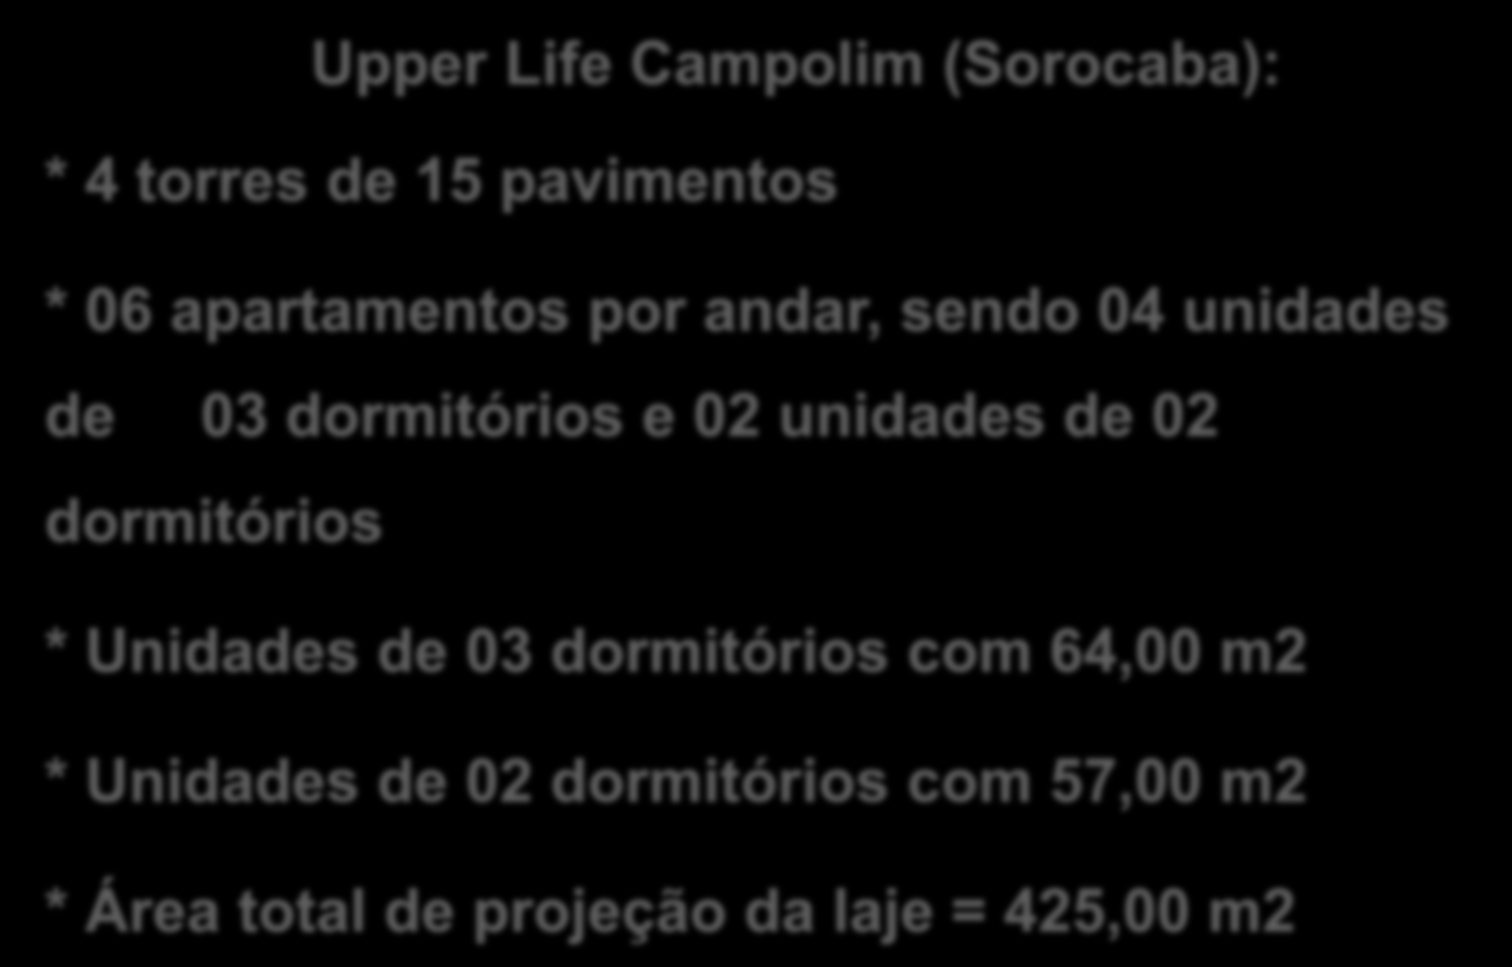 PAREDES DE CONCRETO CASE OBRA SOROCABA Upper Life Campolim (Sorocaba): * 4 torres de 15 pavimentos * 06 apartamentos por andar, sendo 04 unidades de 03